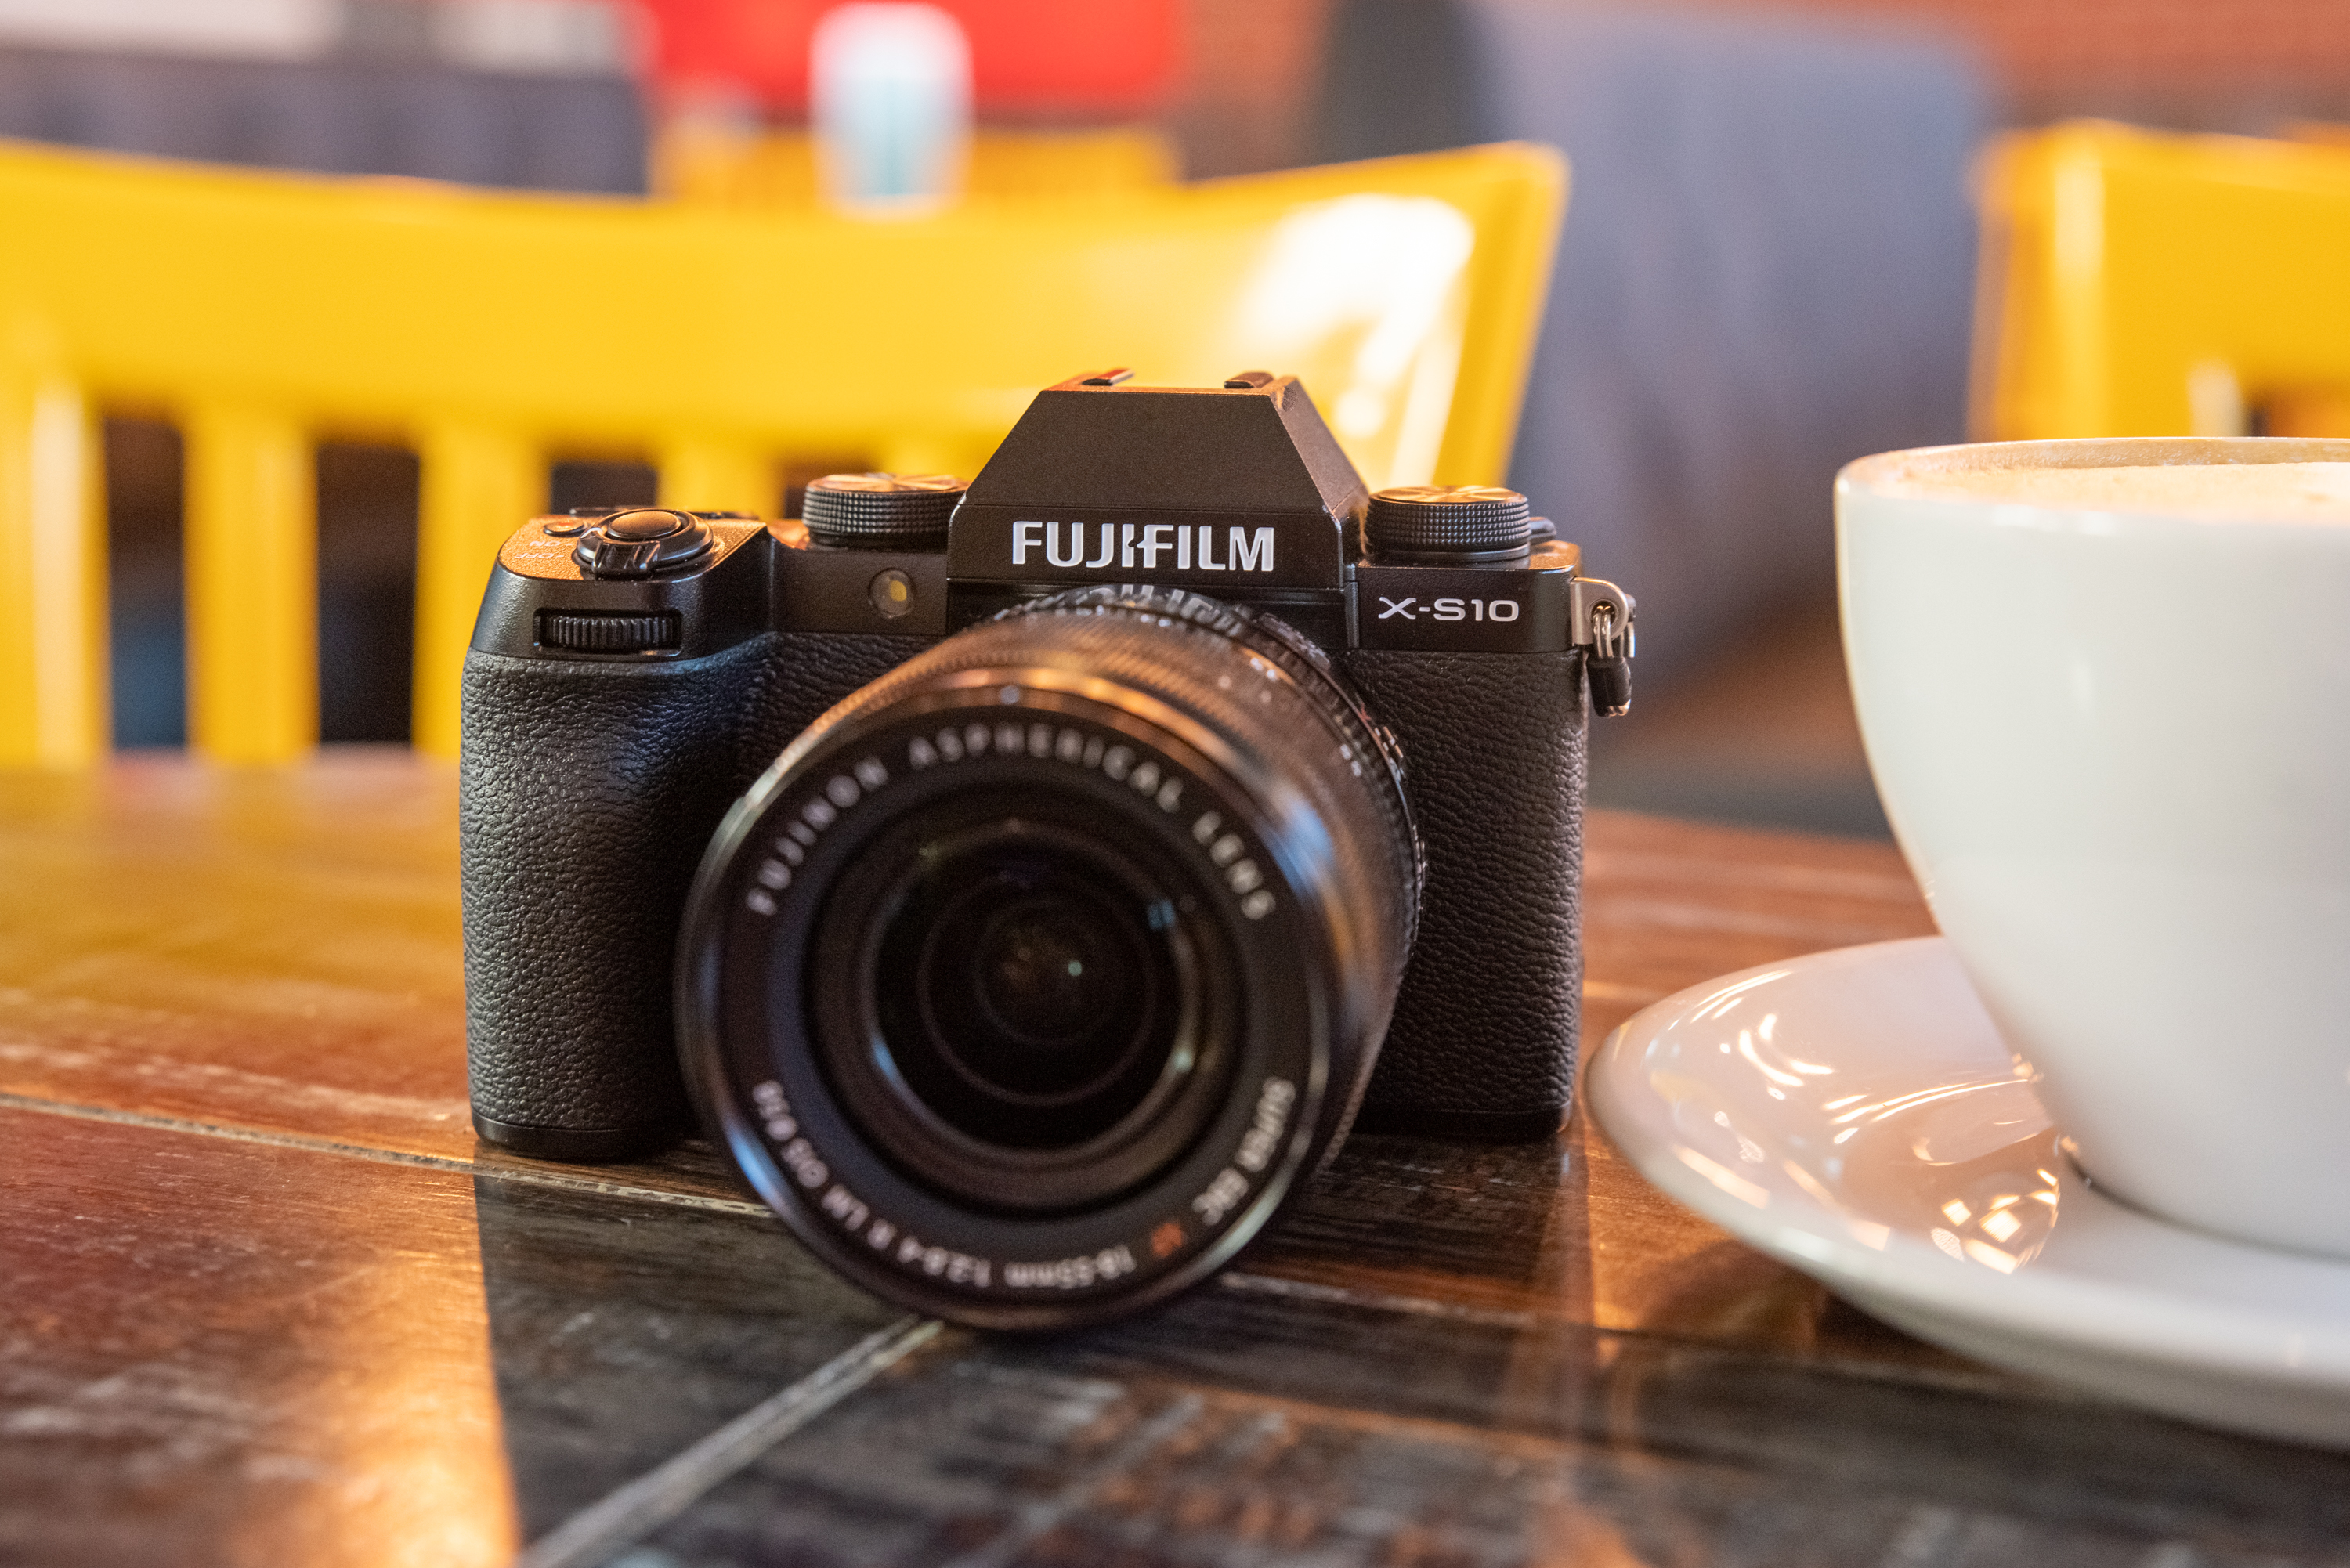 Meet Fujifilm's New Midrange Camera: Fujifilm XS10 First Impressions